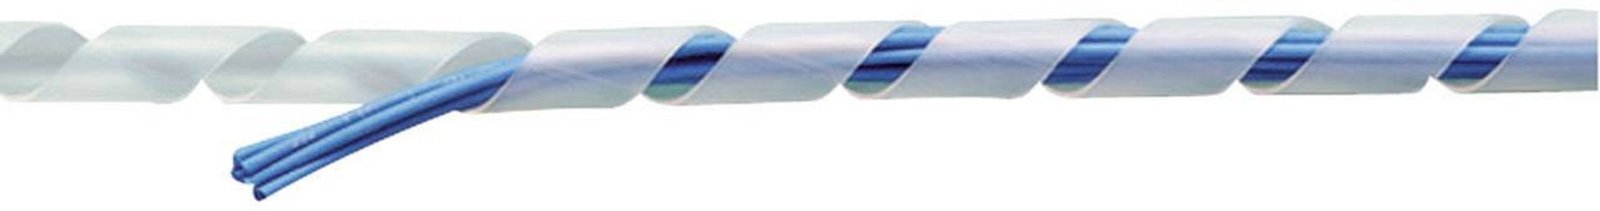 TRU COMPONENTS  1593152  TC-KS24203  ochranná spirála pro kabely  20 do 100 mm  bezbarvá  10 m